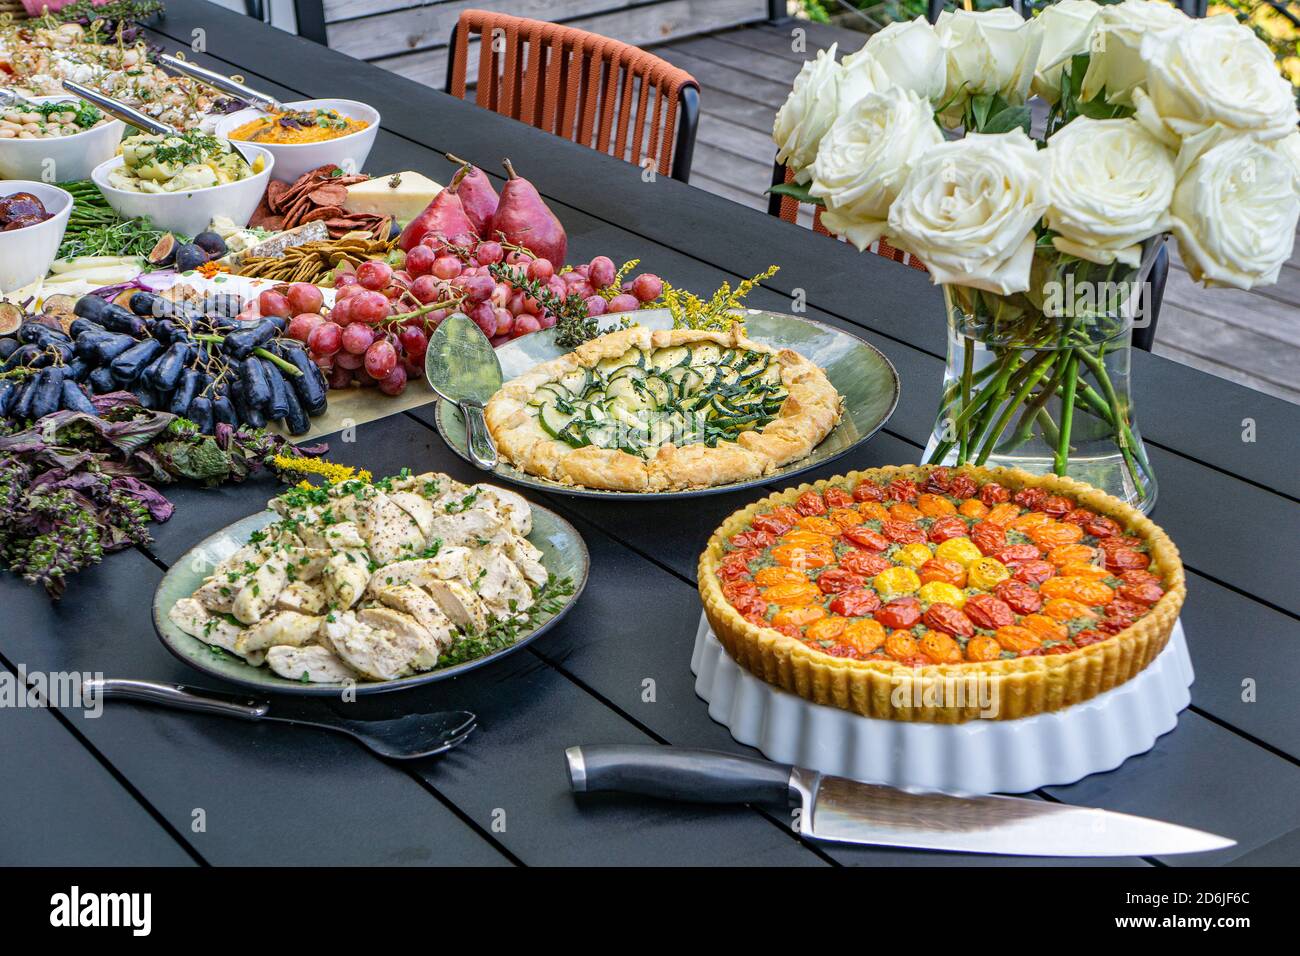 Planche à pâturage avec charcuterie, tartes, fruits et légumes sur table en extérieur Banque D'Images